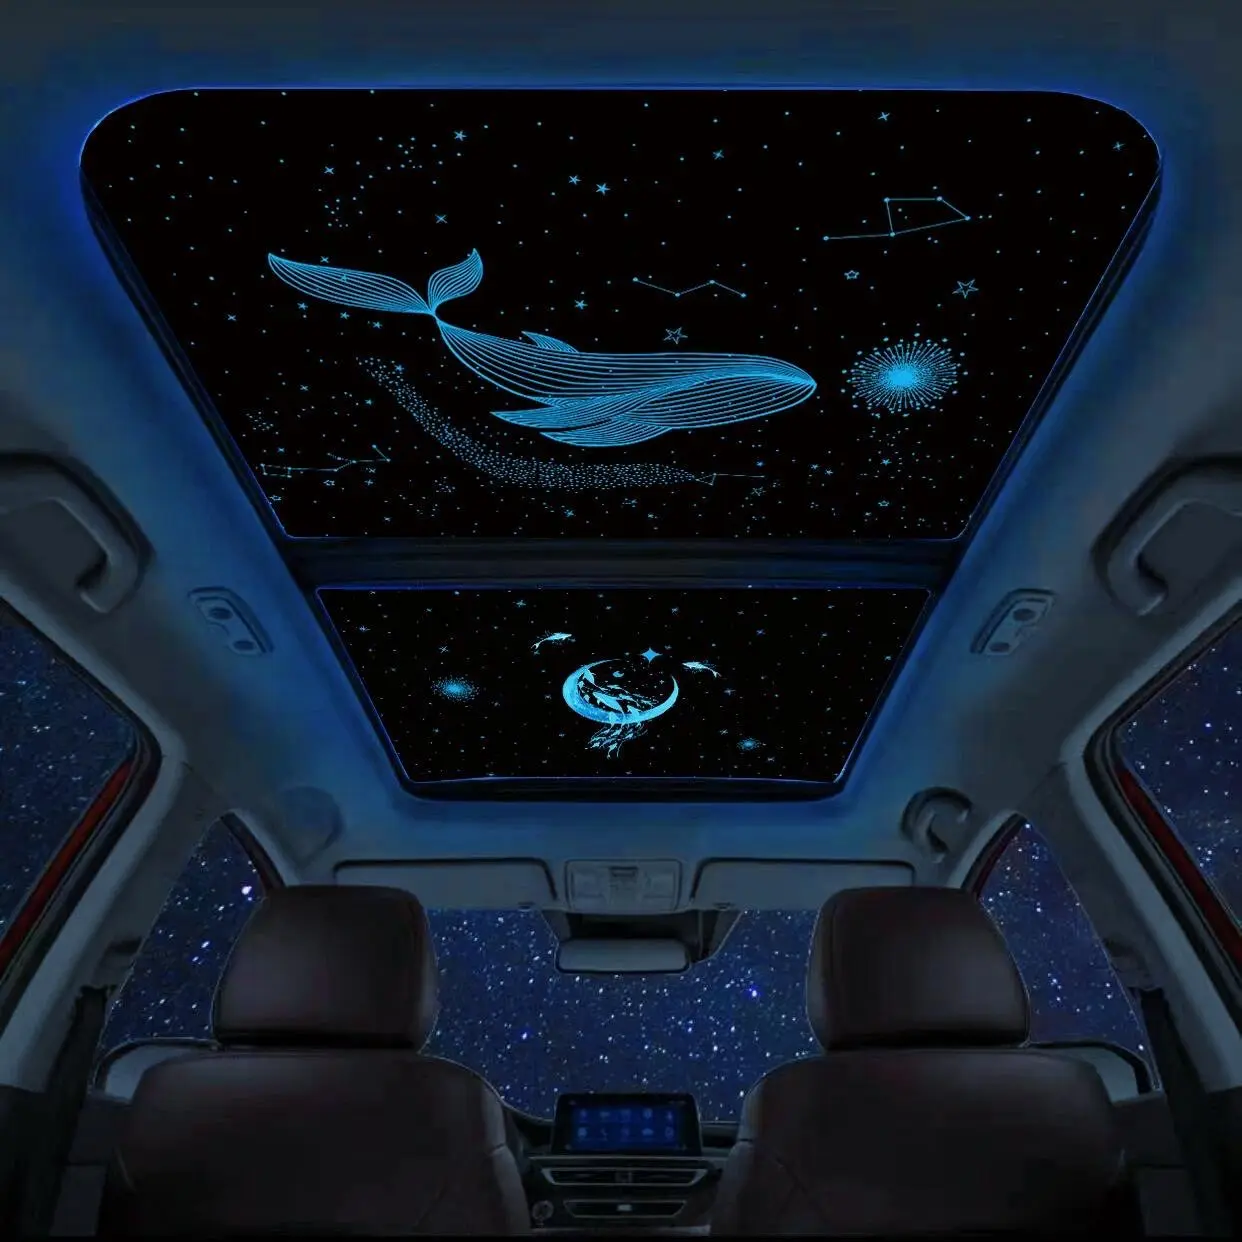 Anti smashing & anti roubo Car Skylight Atmosfera Light Starry Sky Film For Car Sunroofs luz interior